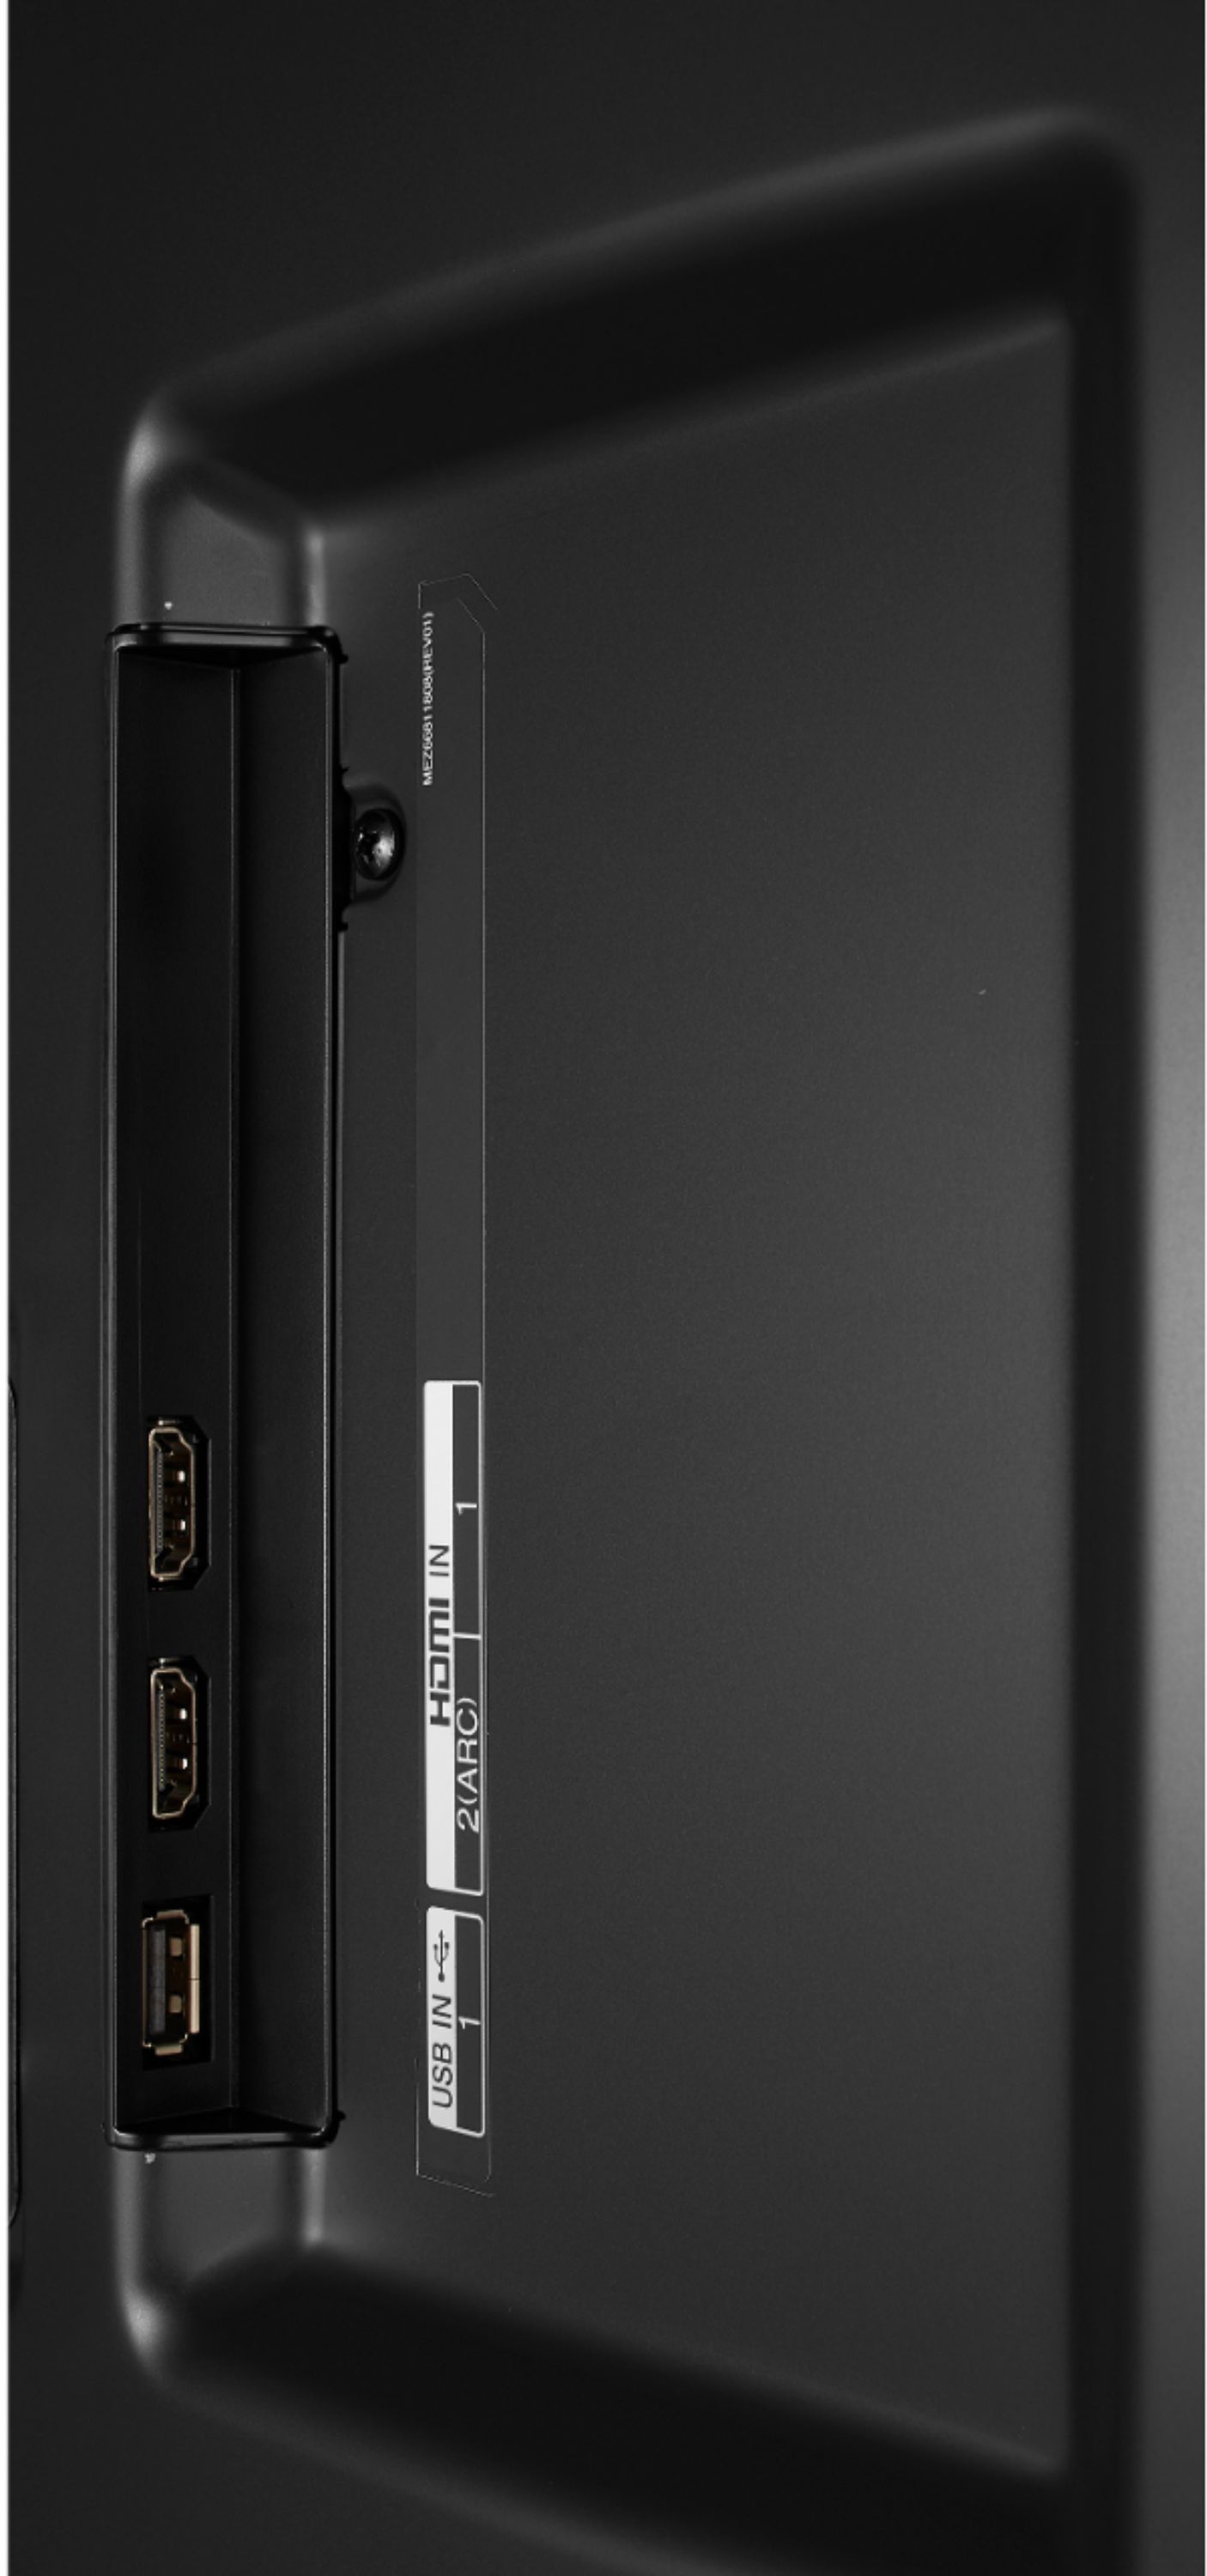 LG 86UM8070PUA: 86 Inch Class 4K HDR Smart LED UHD TV w/ AI ThinQ®